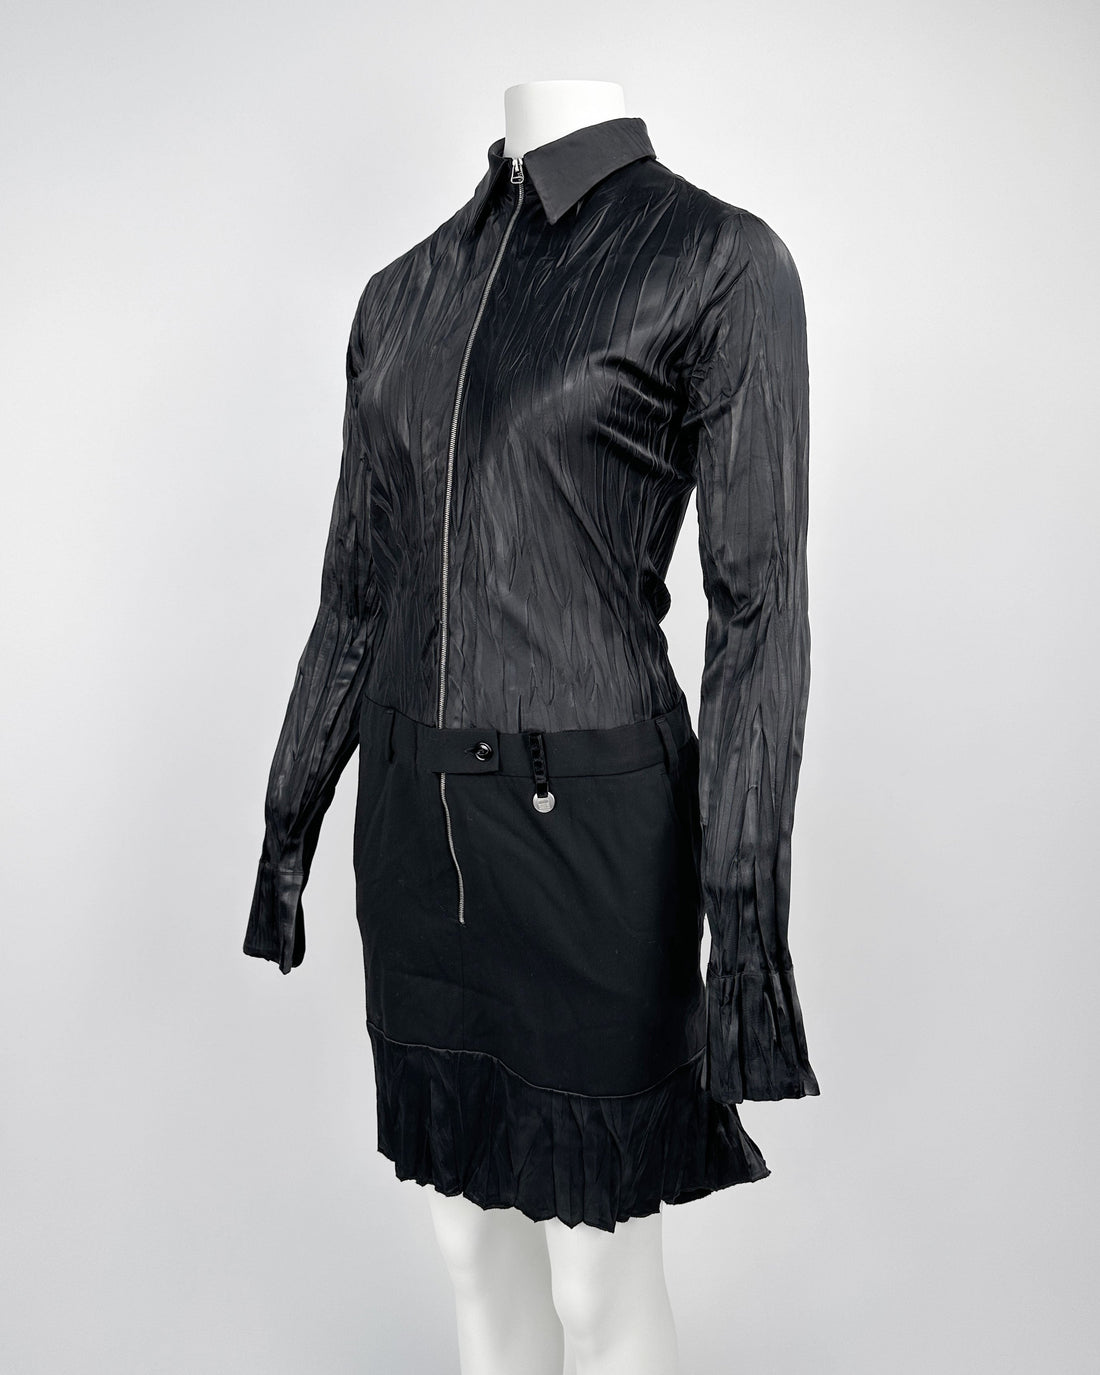 Marithé Francois Girbaud Pleated Black Dress 2000's